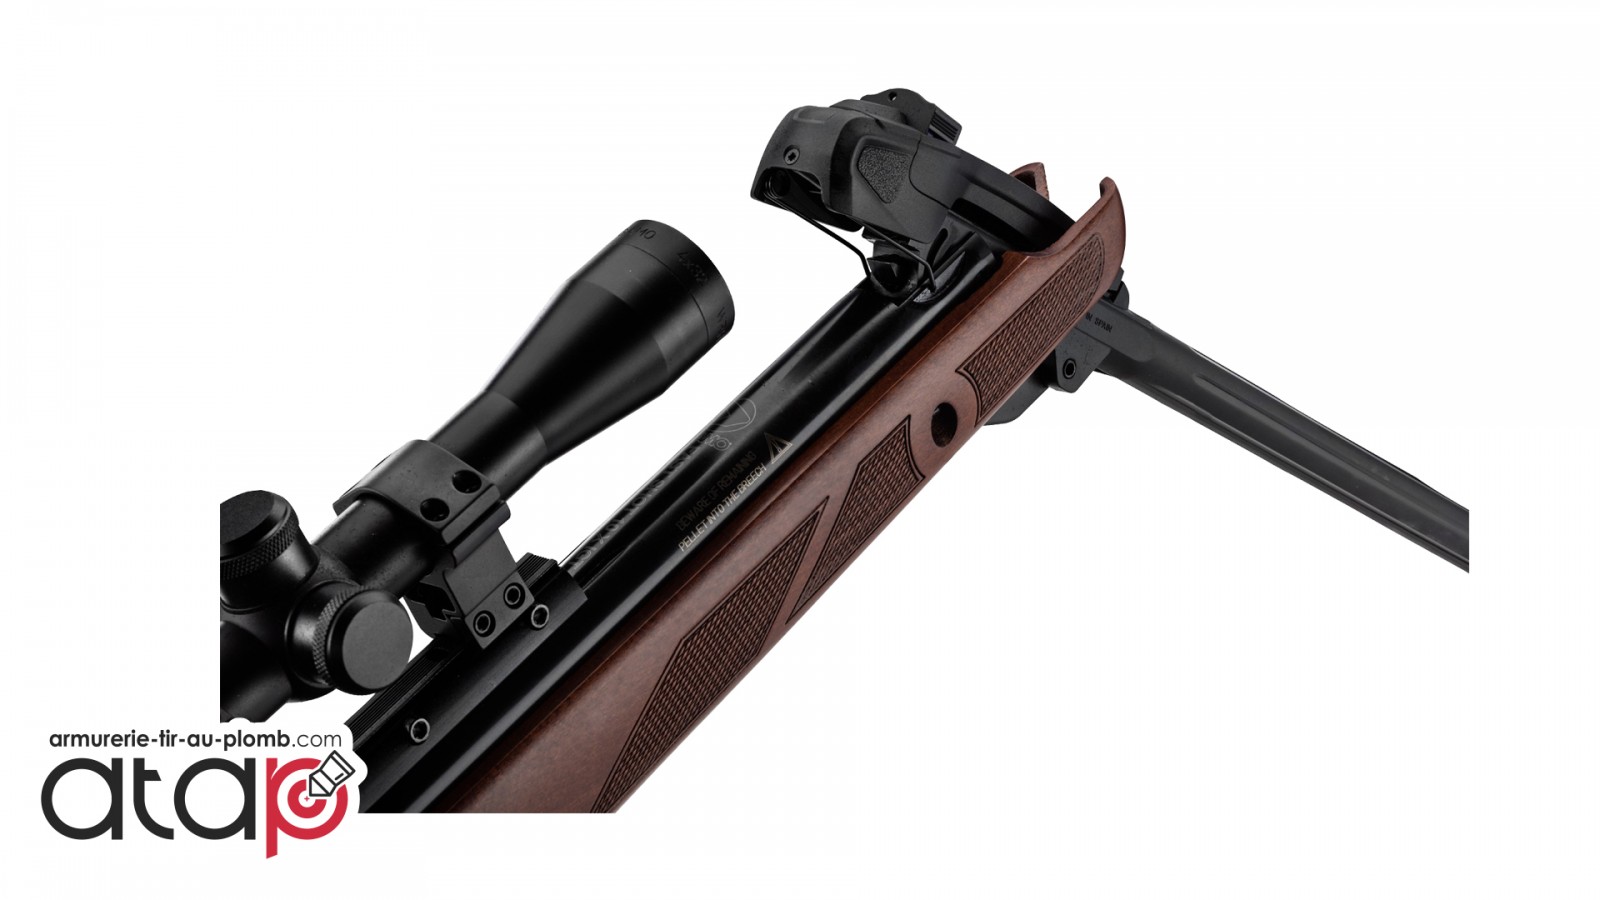 Pastille Gamo TS-10 4,5mm 200u PLOMBS DE TIR SUR CIBLE carabine à air  comprimé